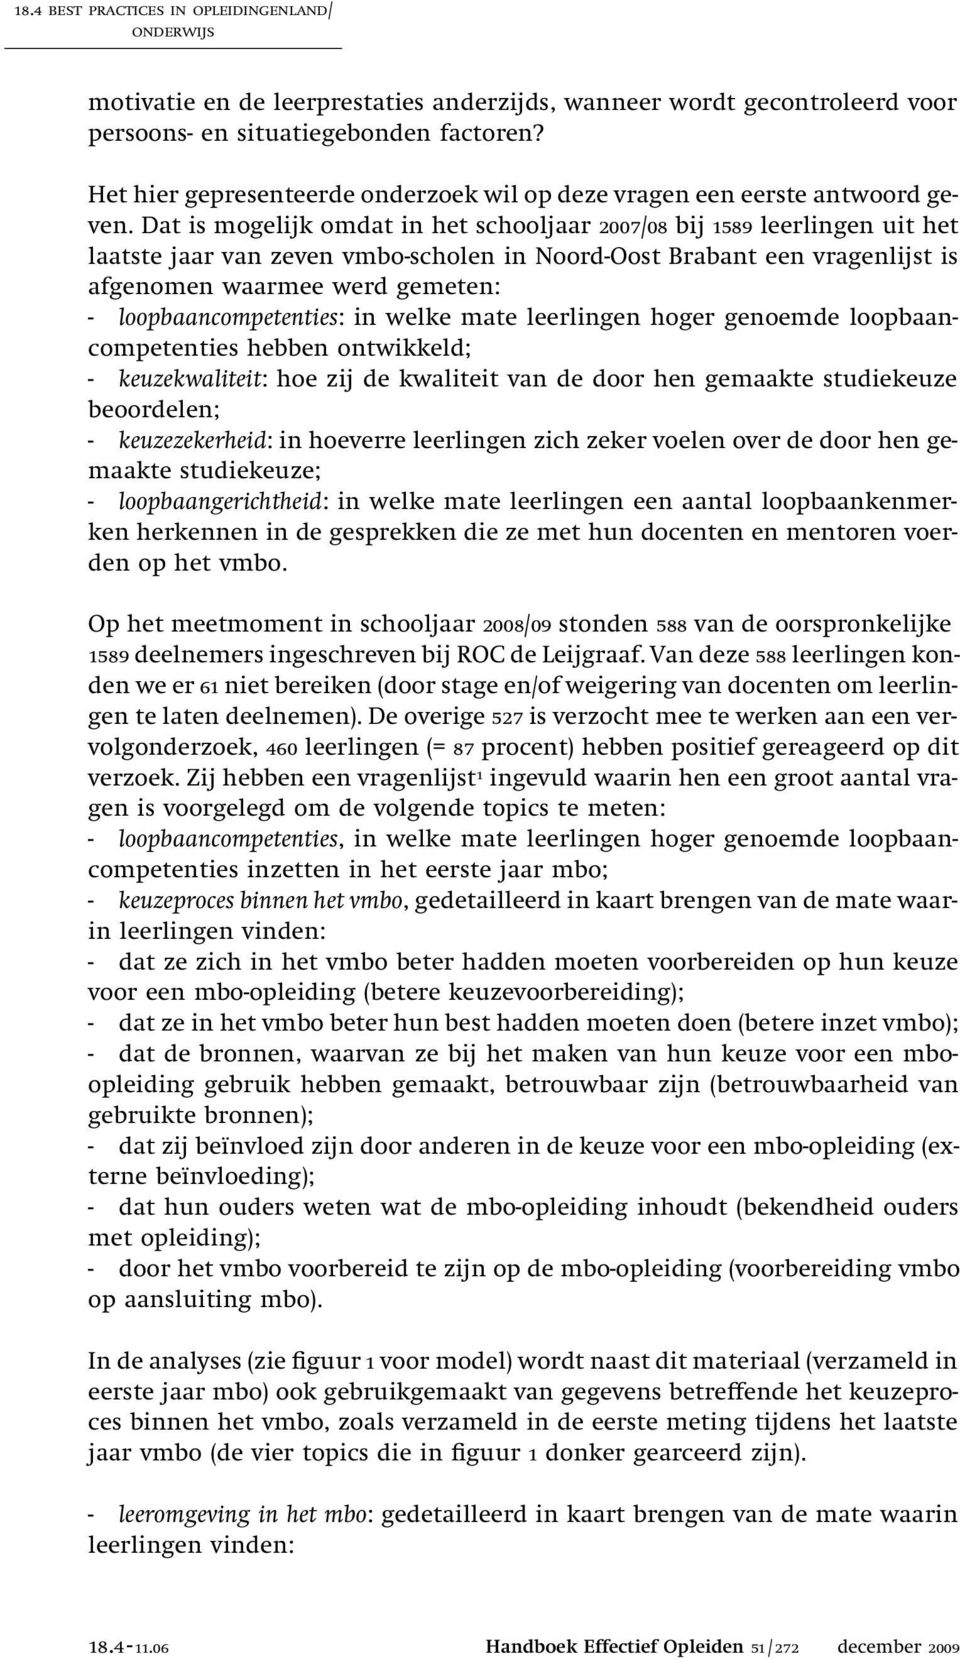 Dat is mogelijk omdat in het schooljaar 2007/08 bij 1589 leerlingen uit het laatste jaar van zeven vmbo-scholen in Noord-Oost Brabant een vragenlijst is afgenomen waarmee werd gemeten: -